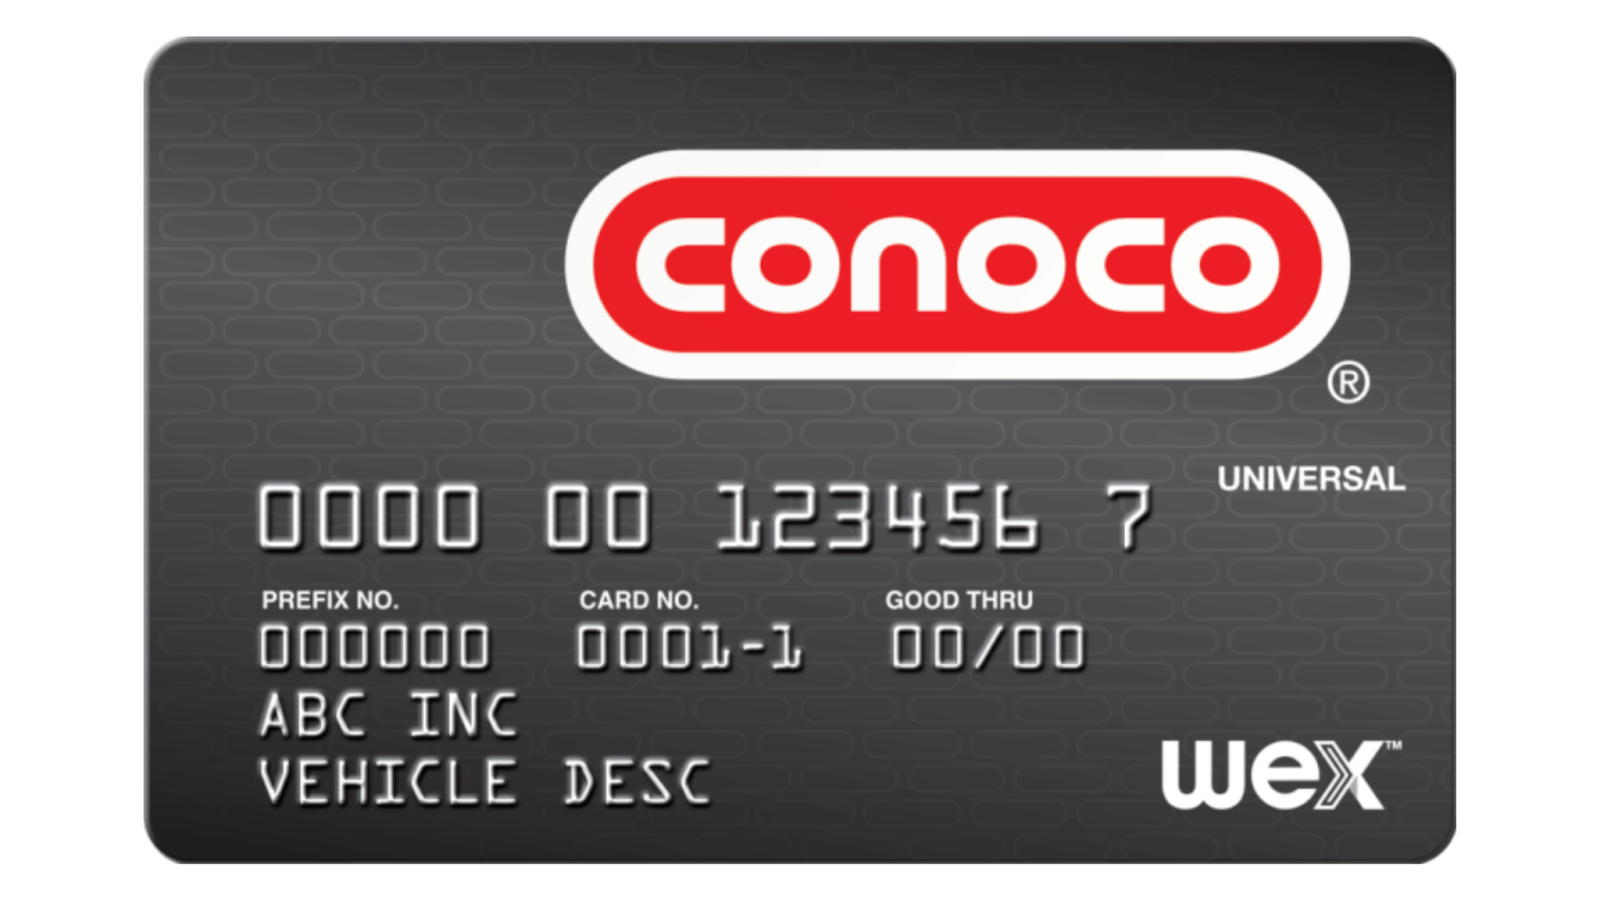 Conoco universal gas card